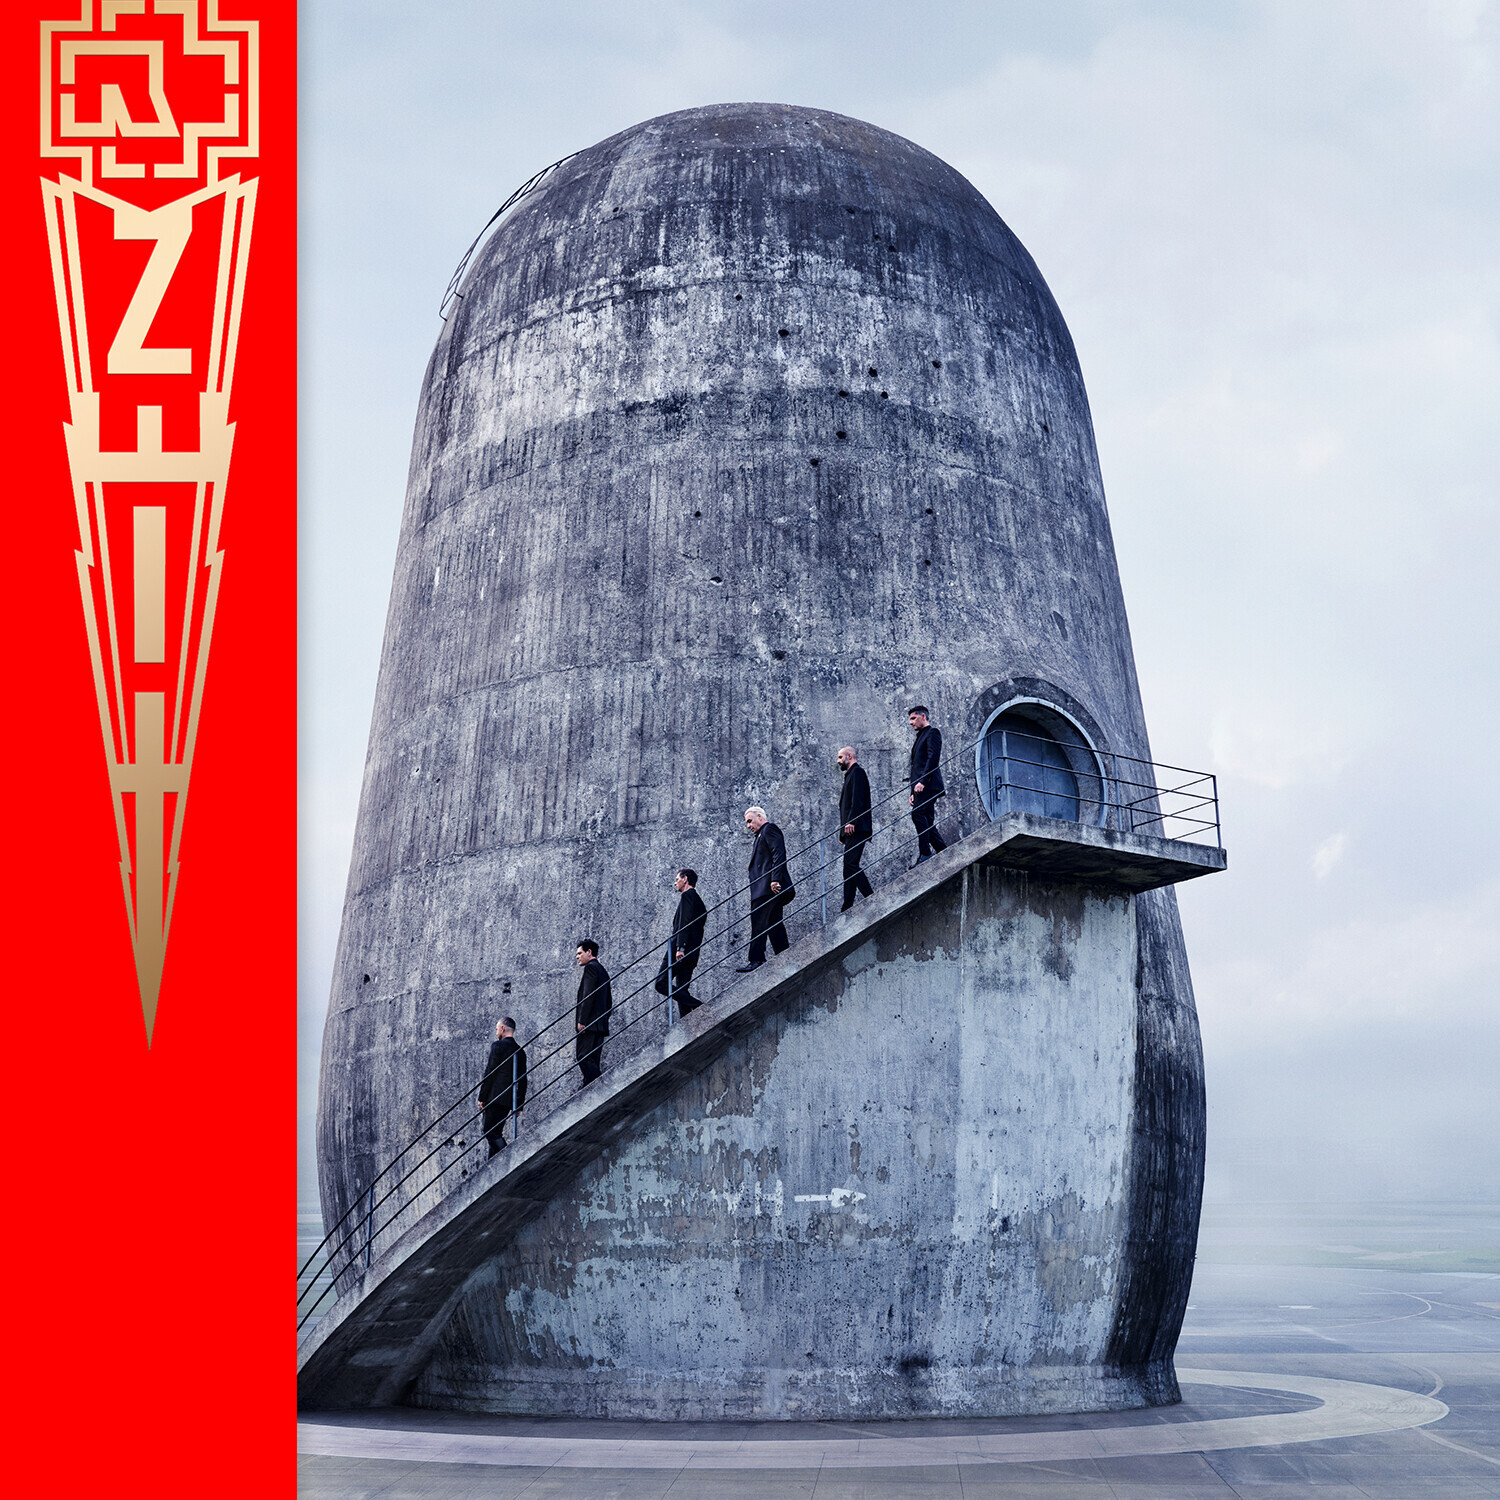 ZEIT Rammstein nuevo álbum